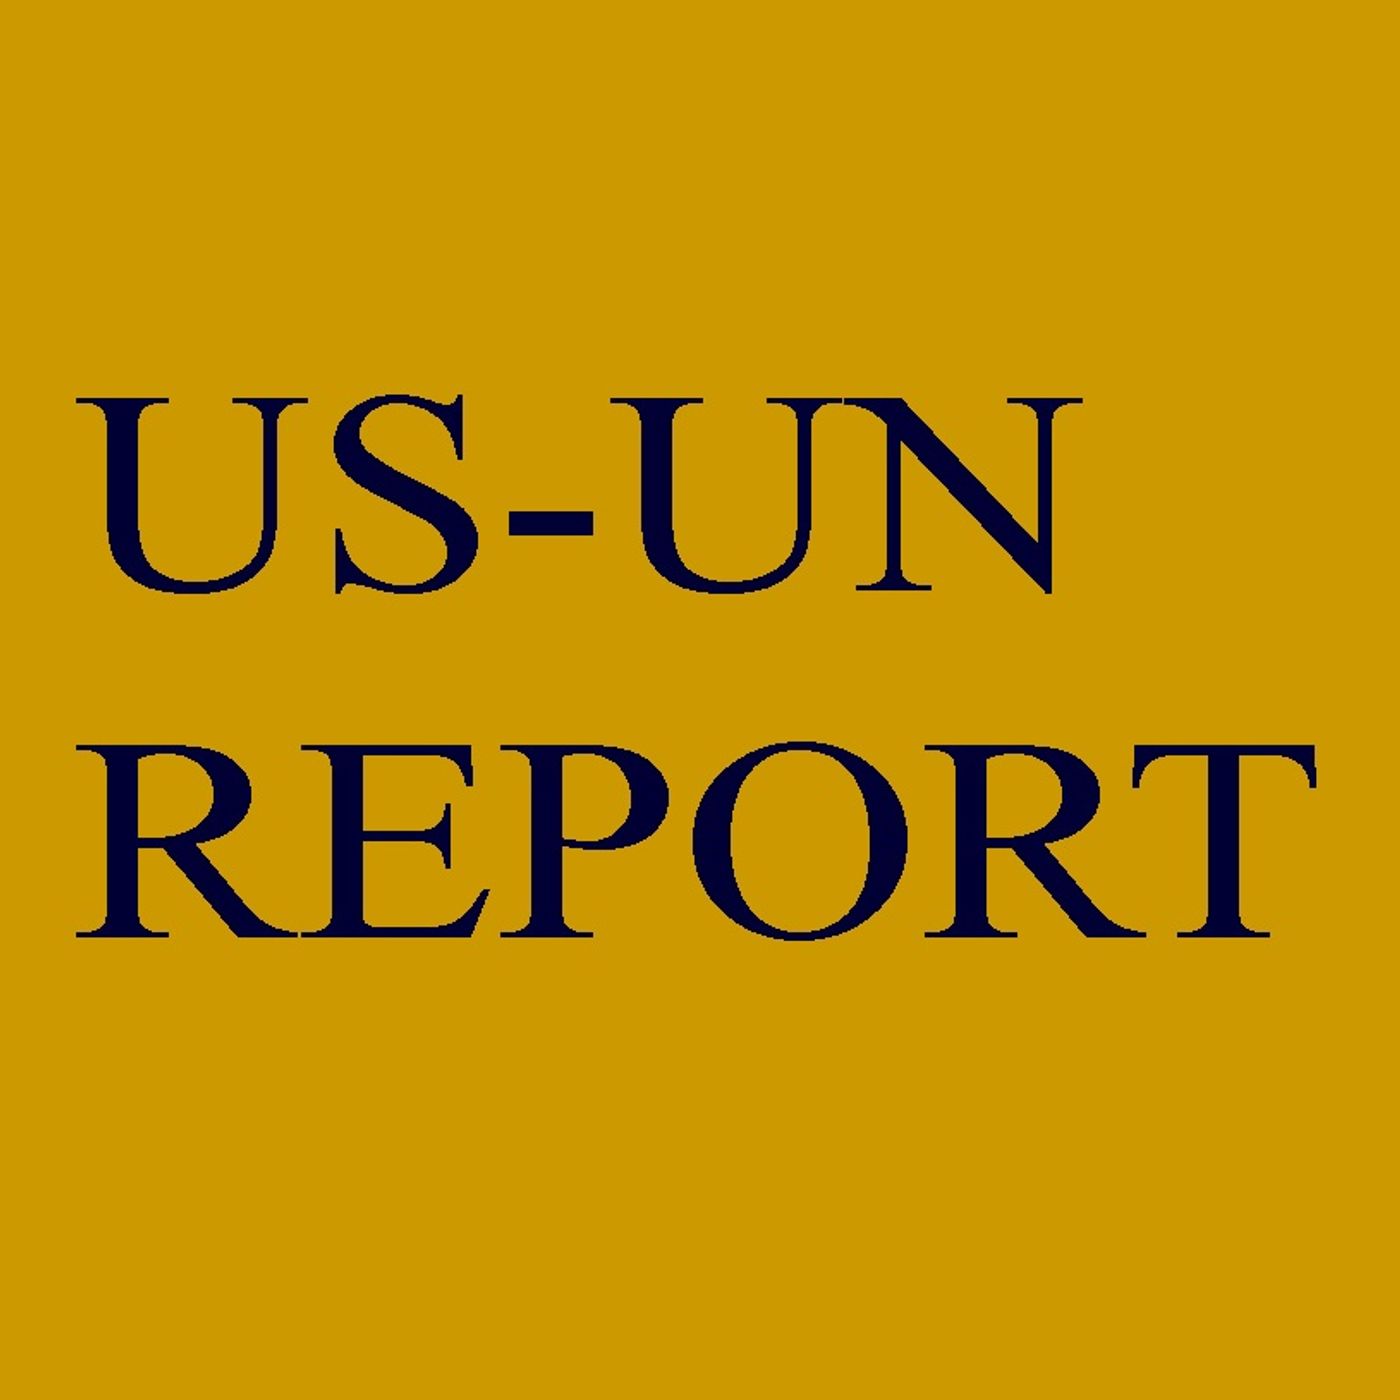 US-UN REPORT's tracks